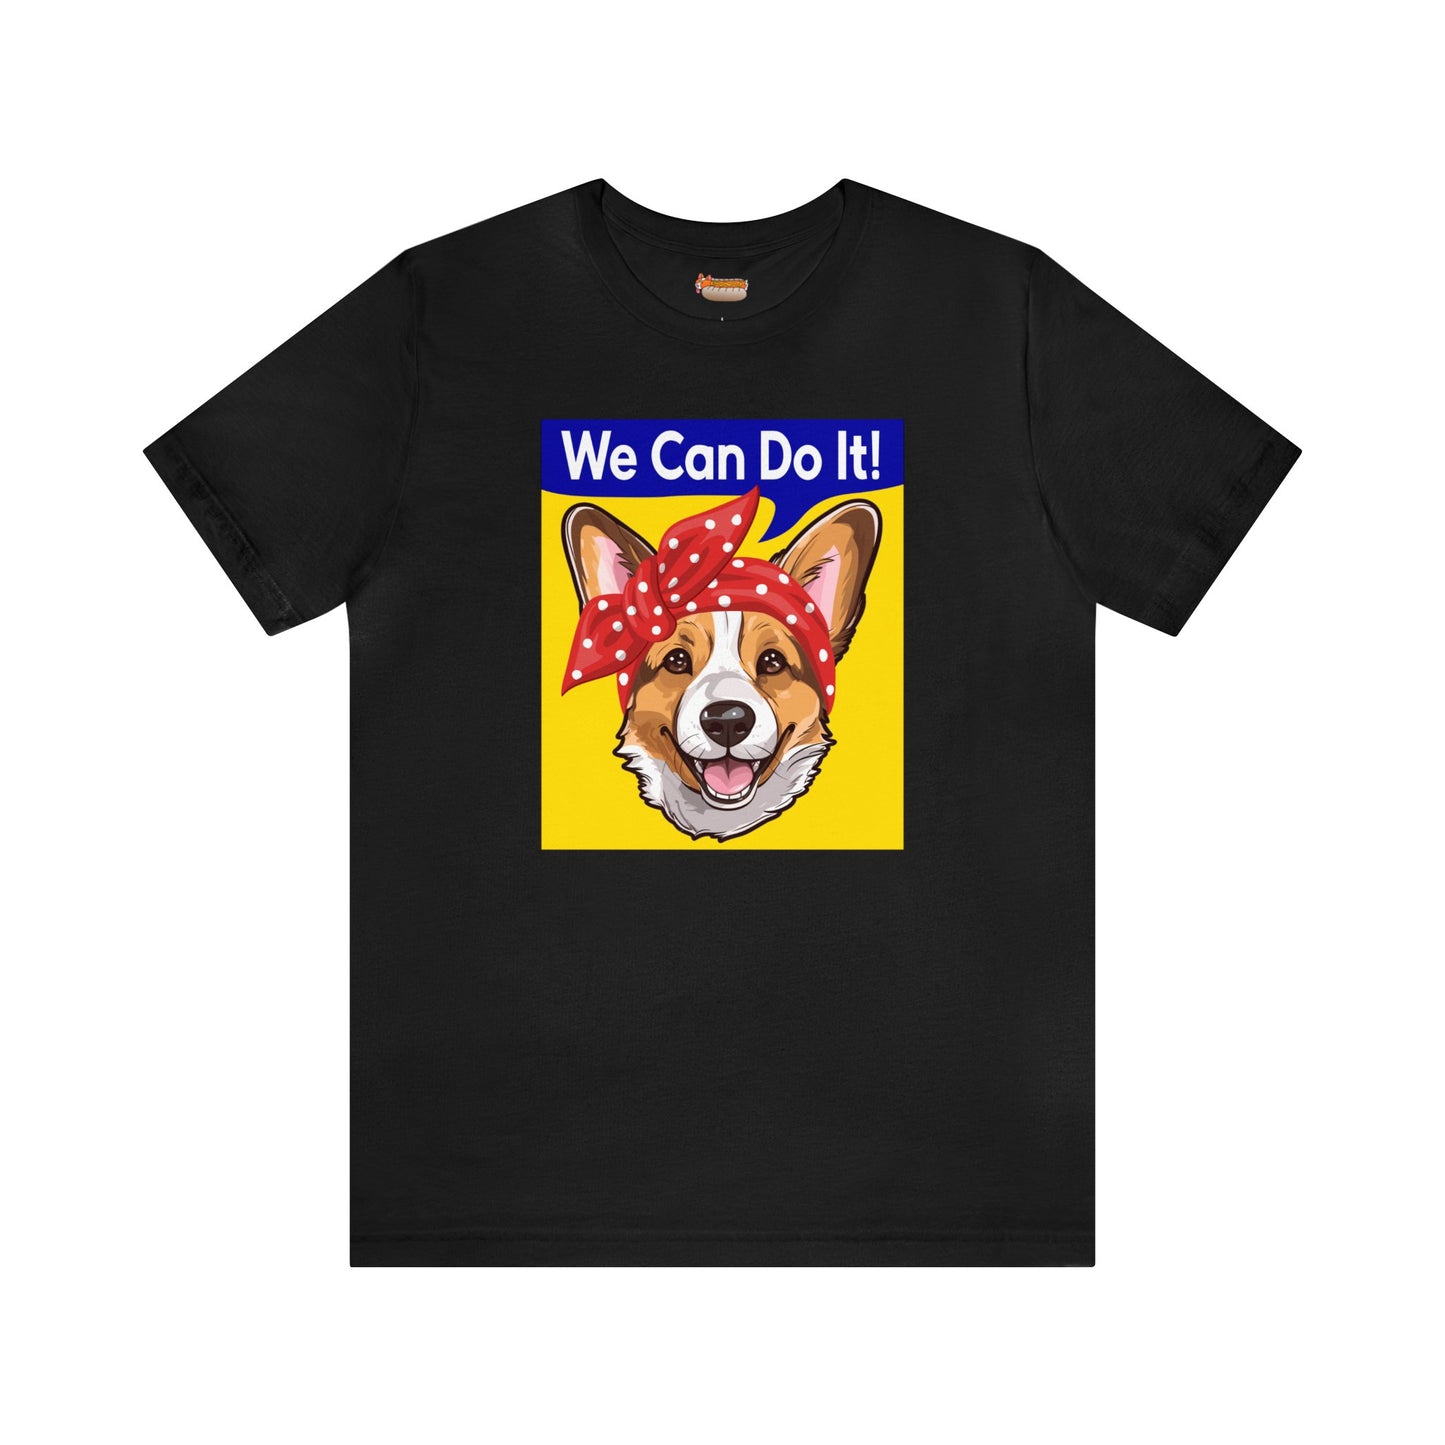 black corgi t-shirt rosie the riveter women's rights shirt gift for her dog lover